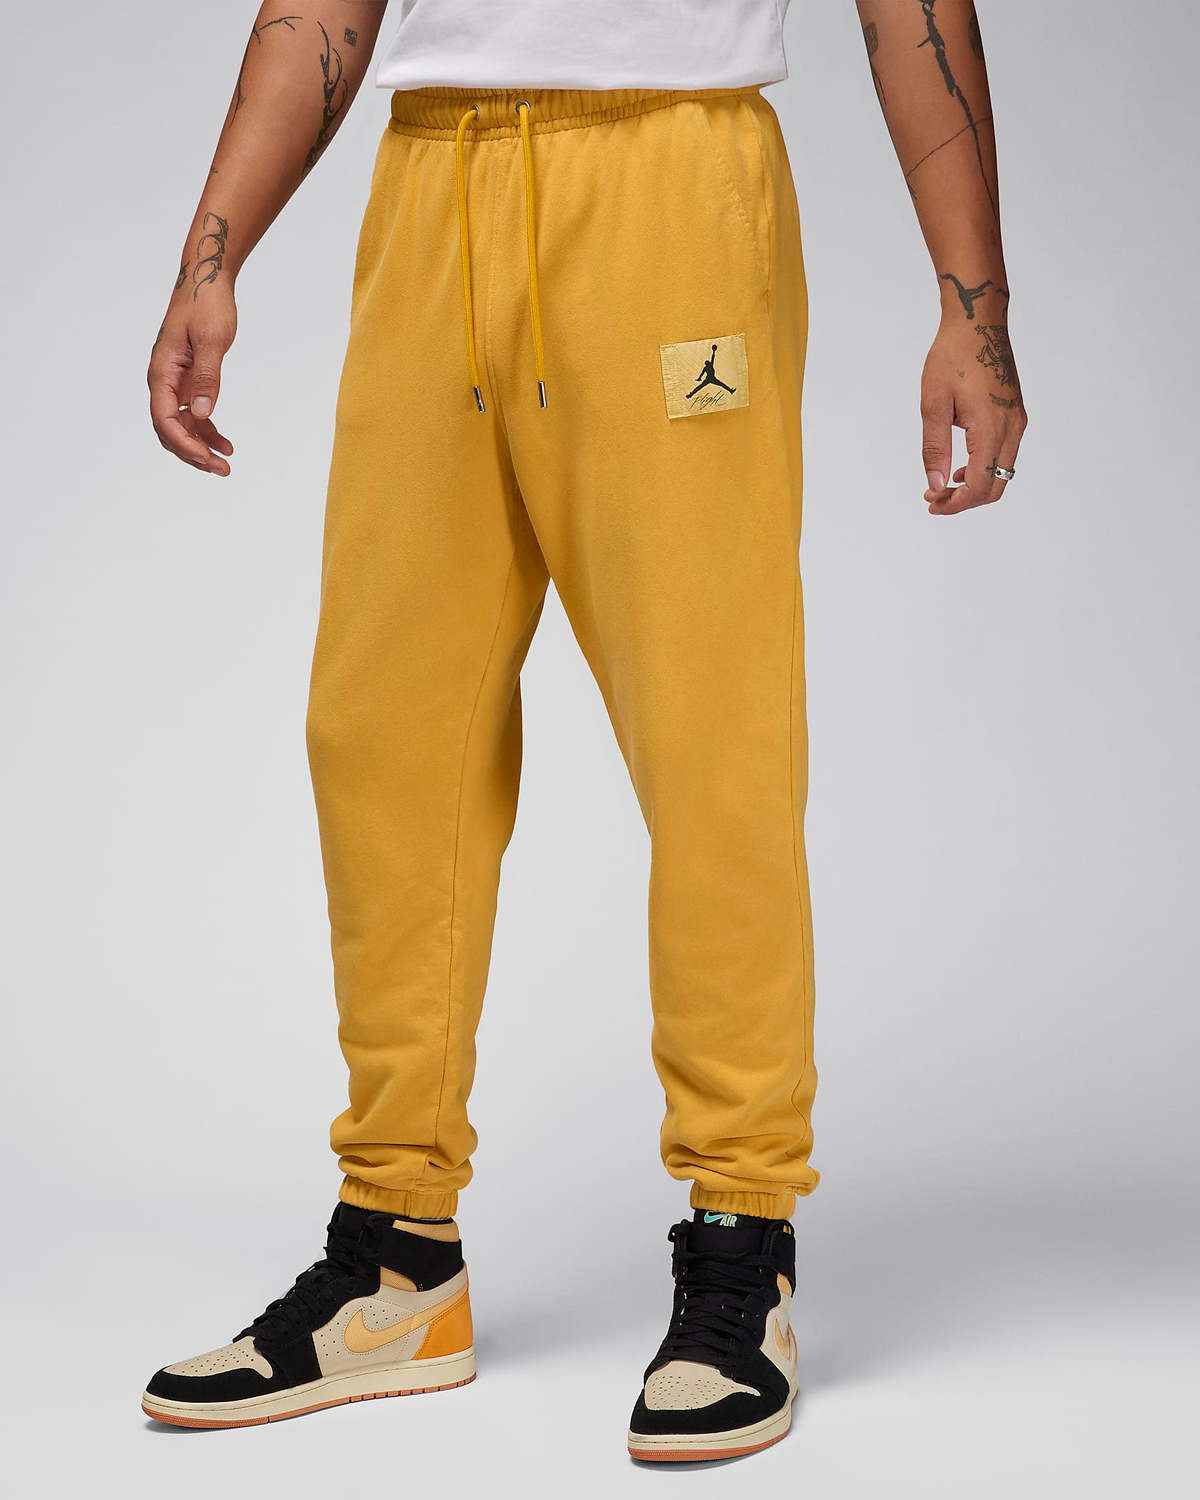 Jordan-Essentials-Fleece-Washed-Pants-Yellow-Ochre